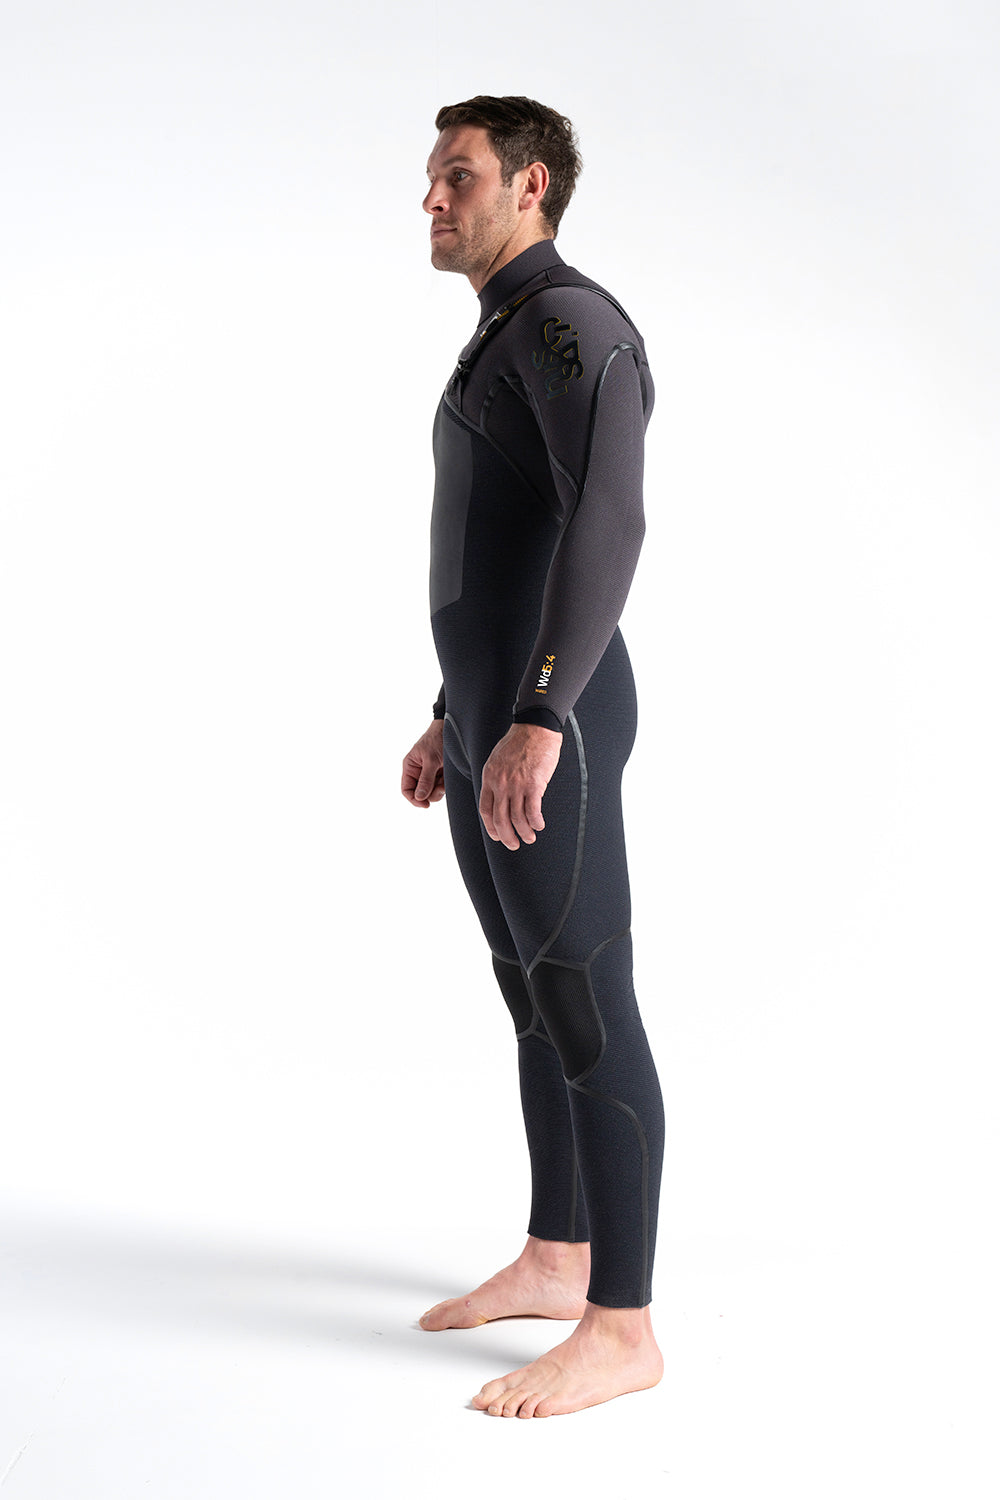 c-skins-wired-chest-zip-5-4-liquid-seams-halo-x-db8-winter-wetsuit-galway-ireland-blacksheepsurfco-side